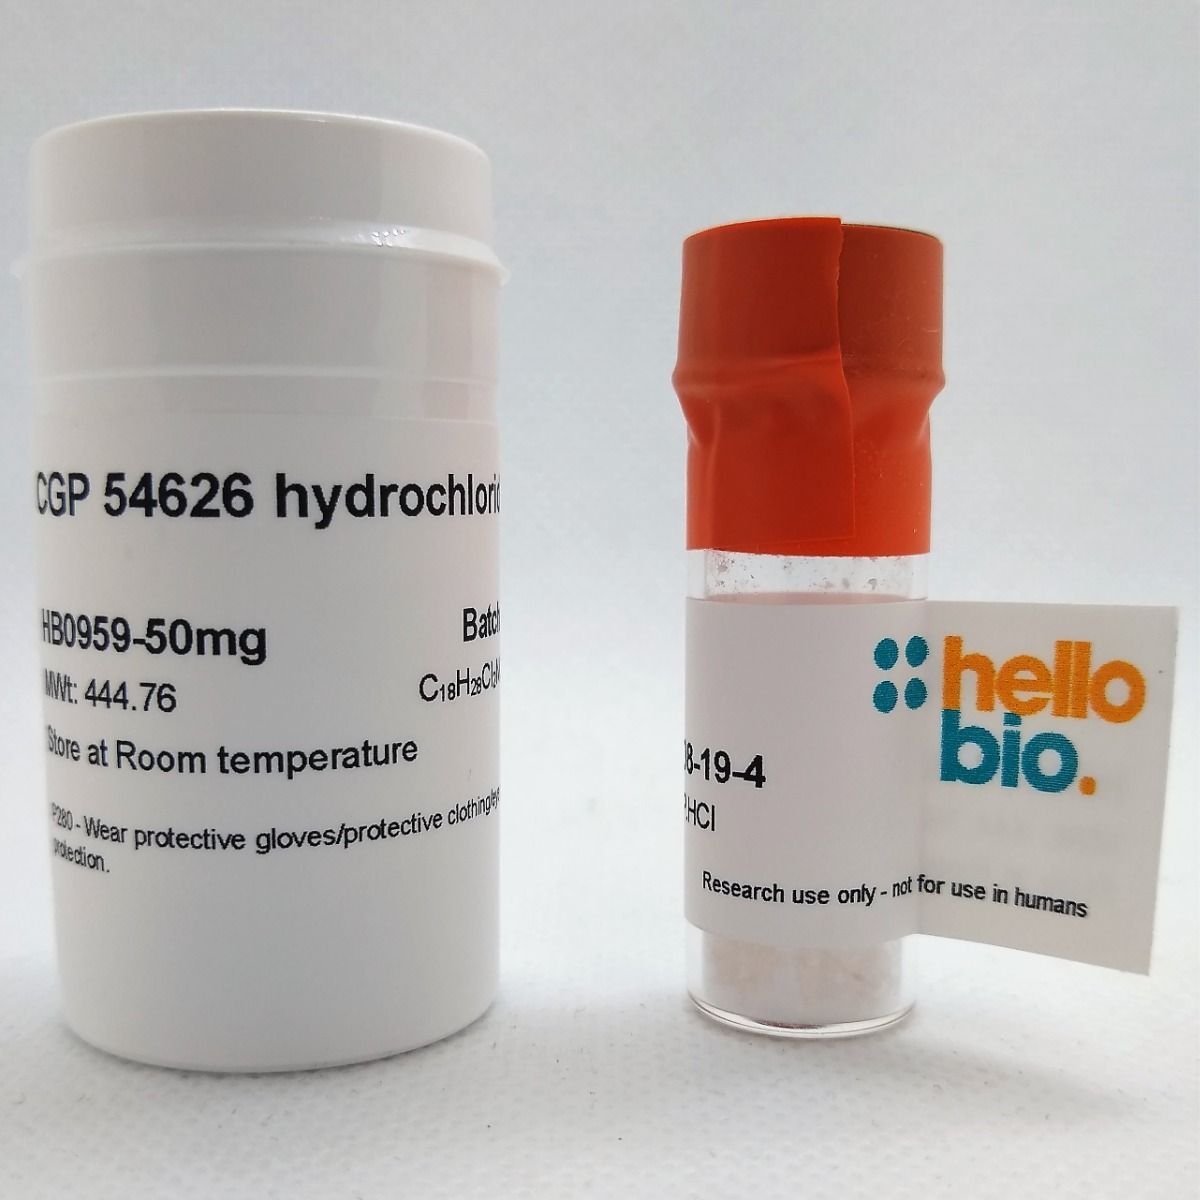 CGP 54626 hydrochloride product vial image | Hello Bio